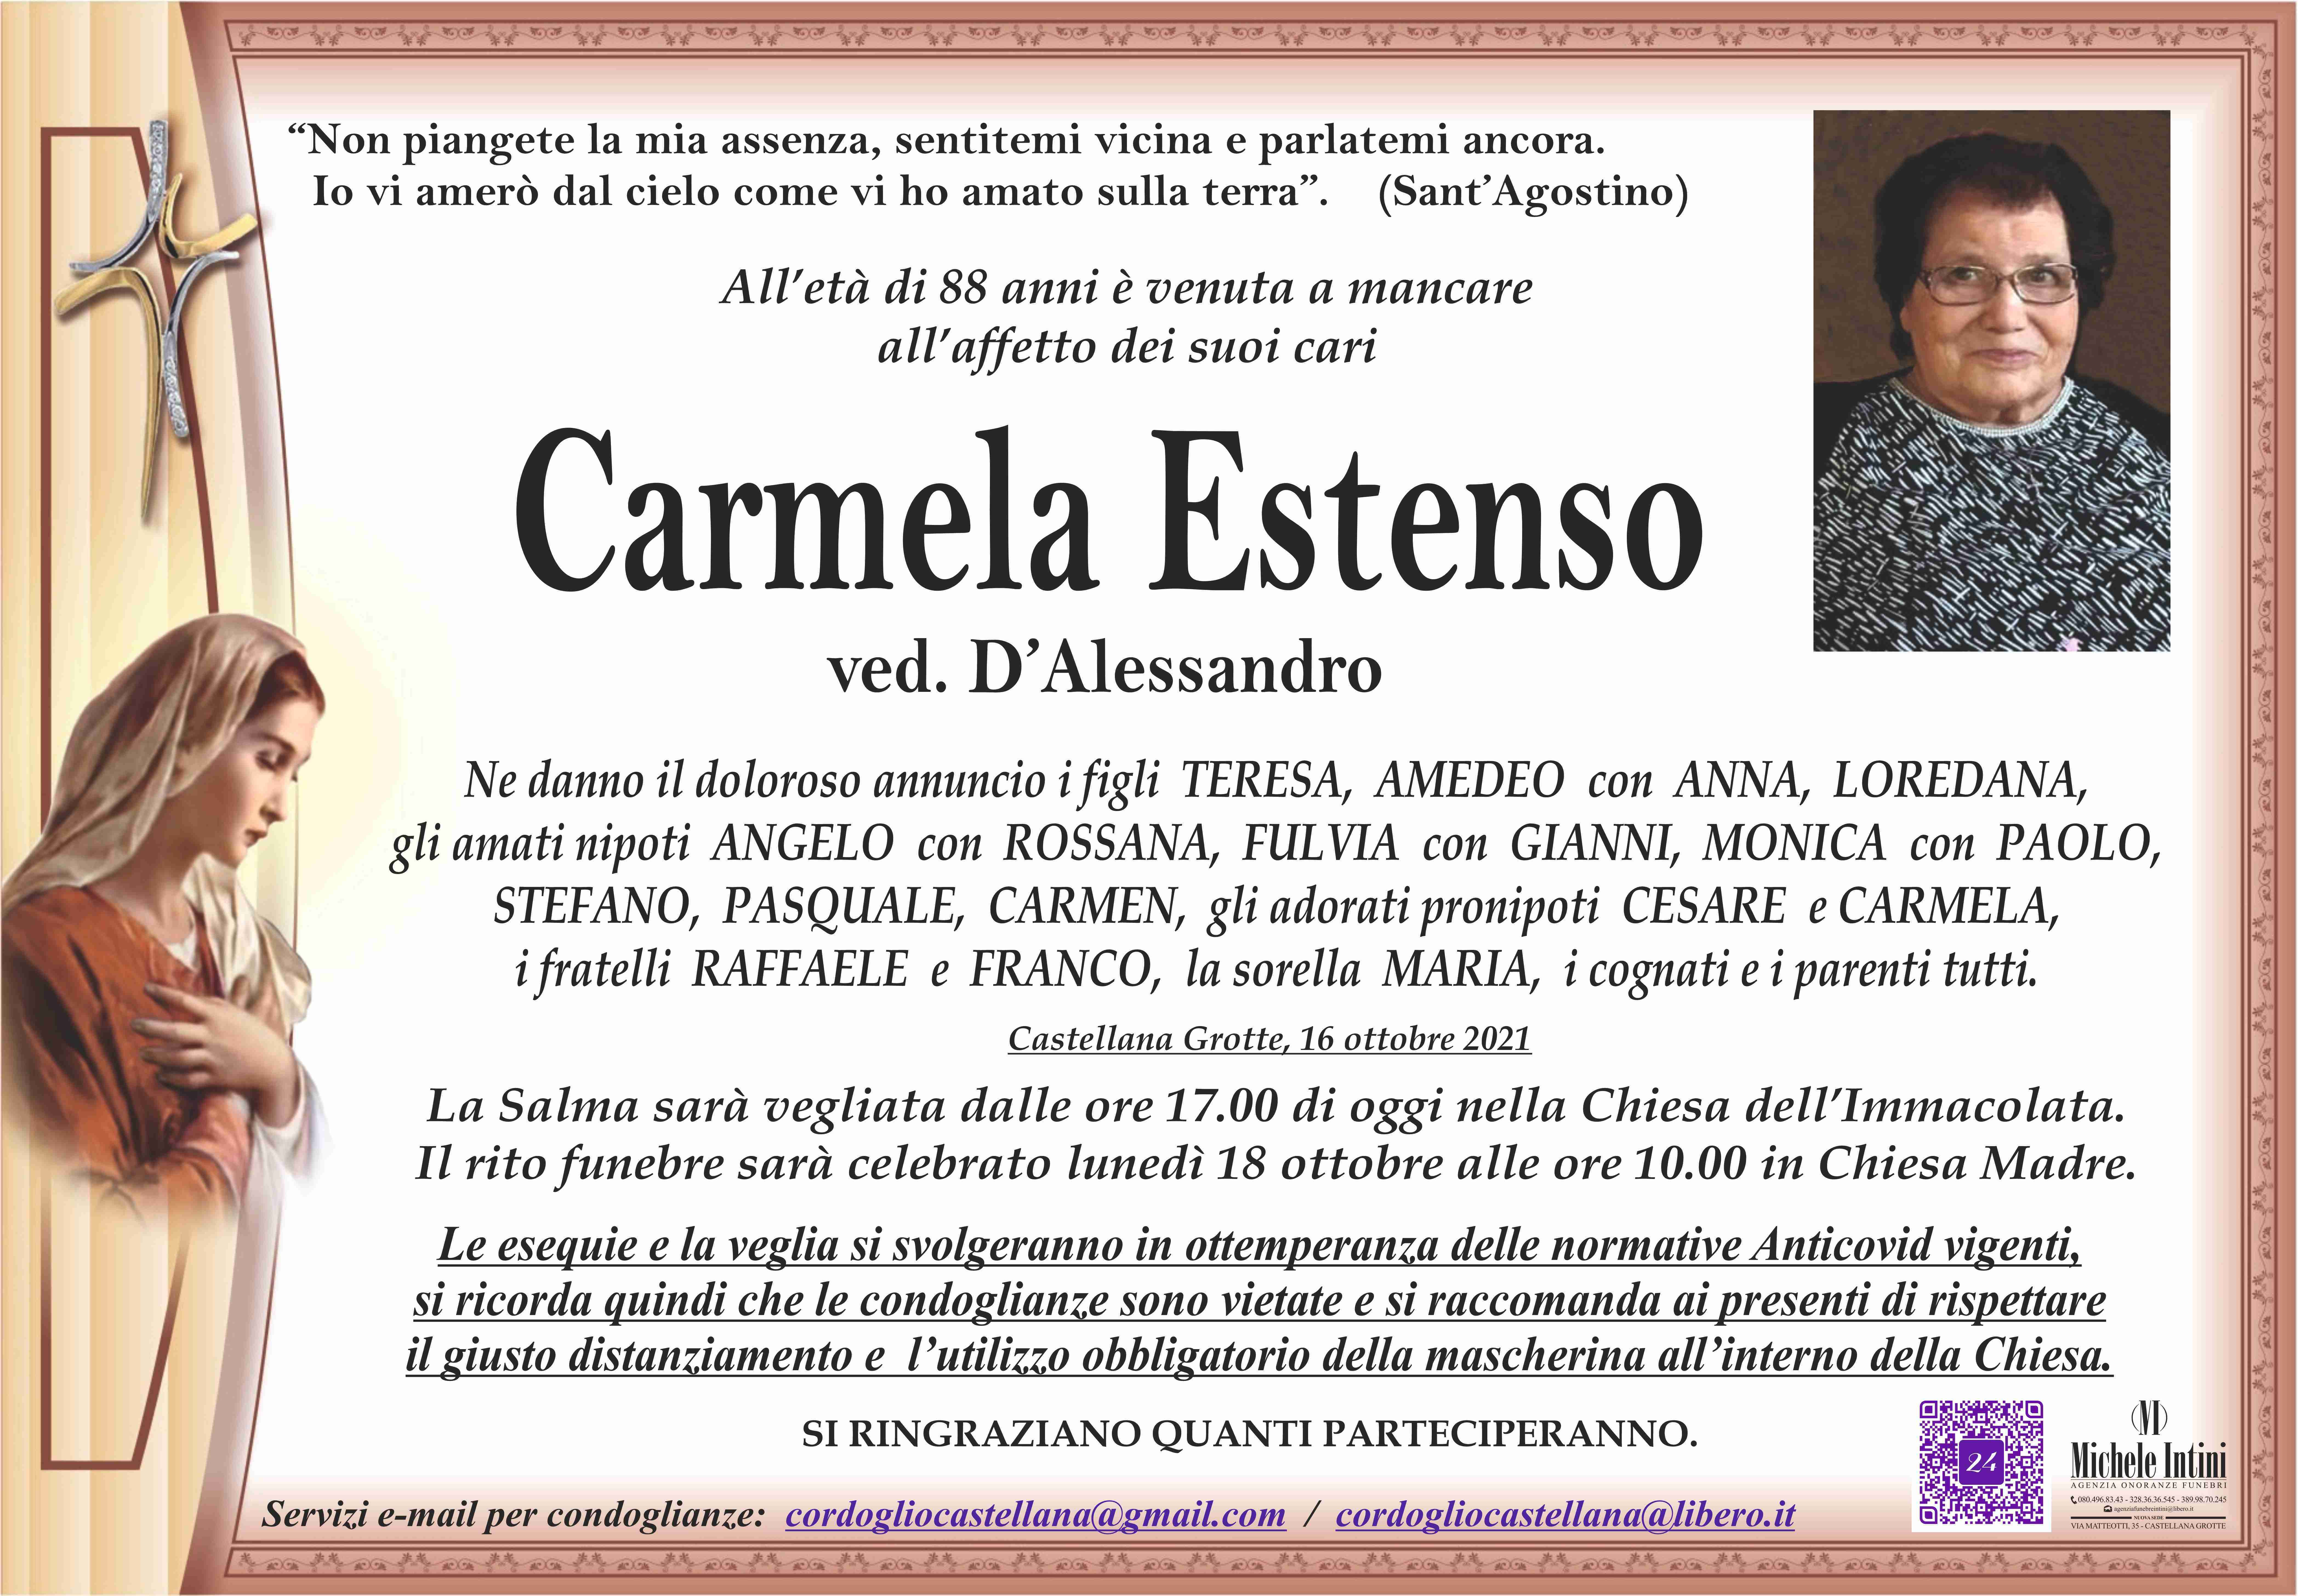 Carmela Estenso